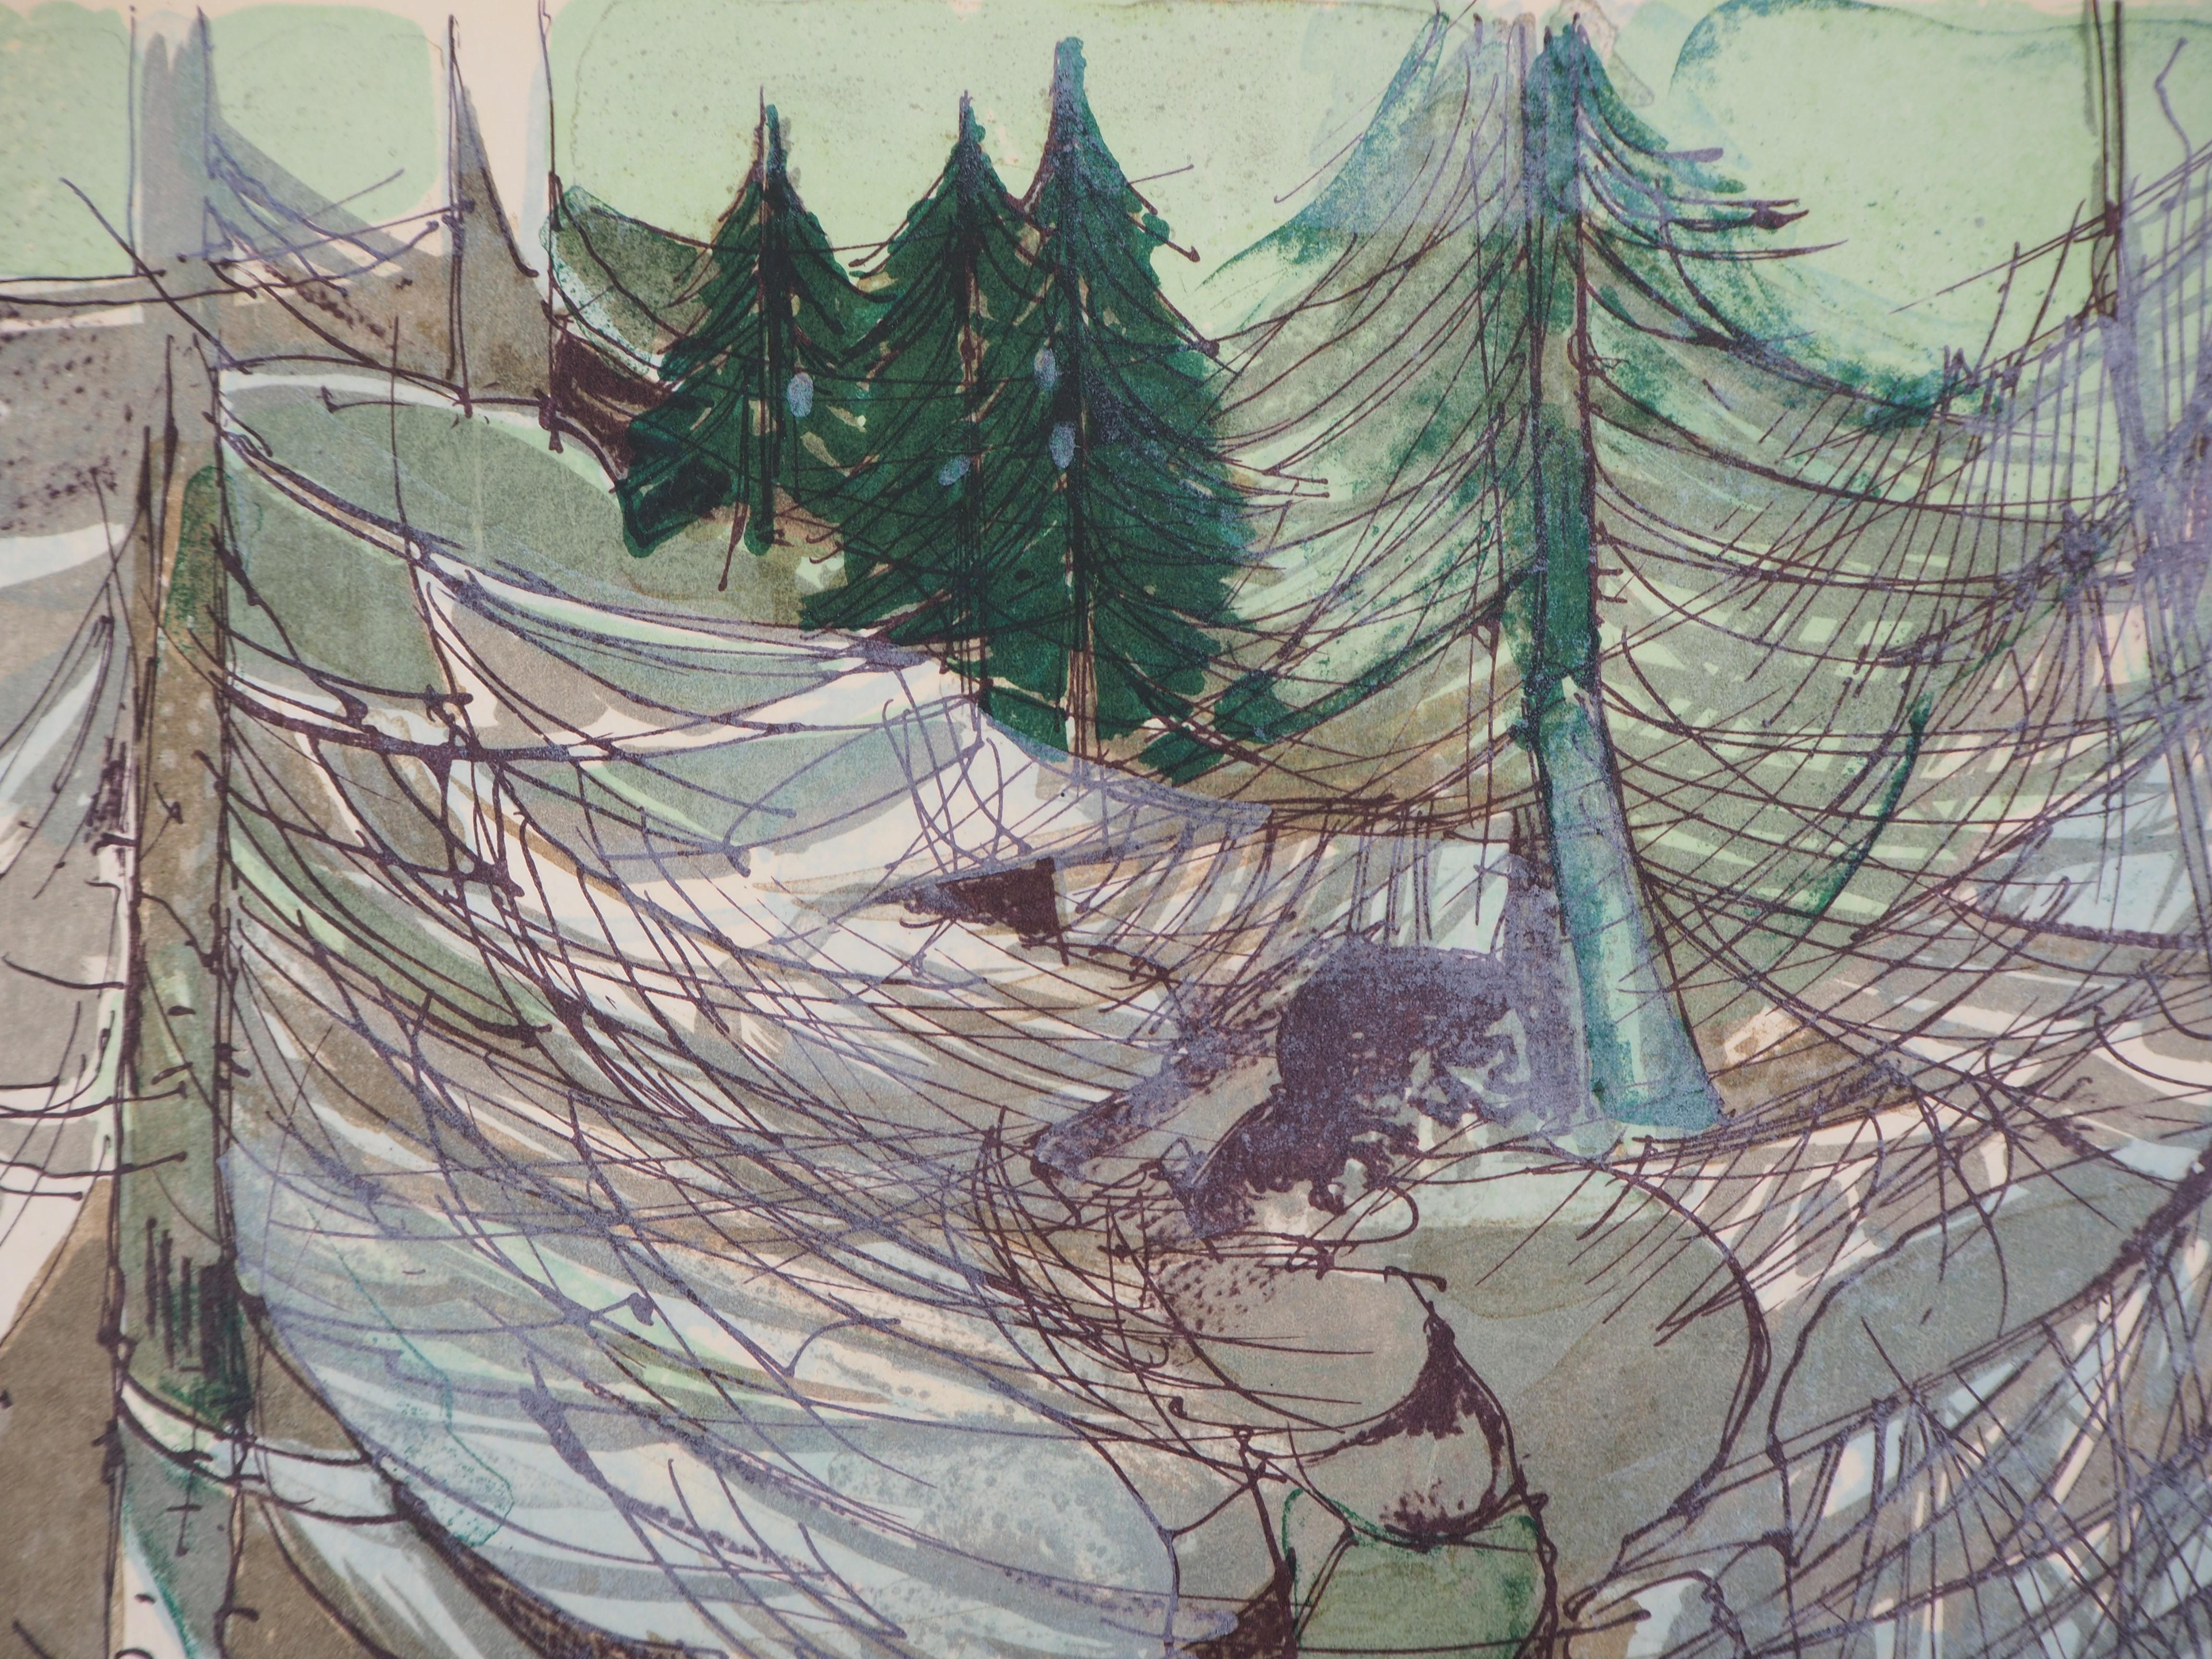 Camille HILAIRE
Mountain torrent

Original lithograph
Handsigned in pencil
On Vellum 40 x 30 cm (c. 16 x 12 in)

Ausgezeichneter Zustand